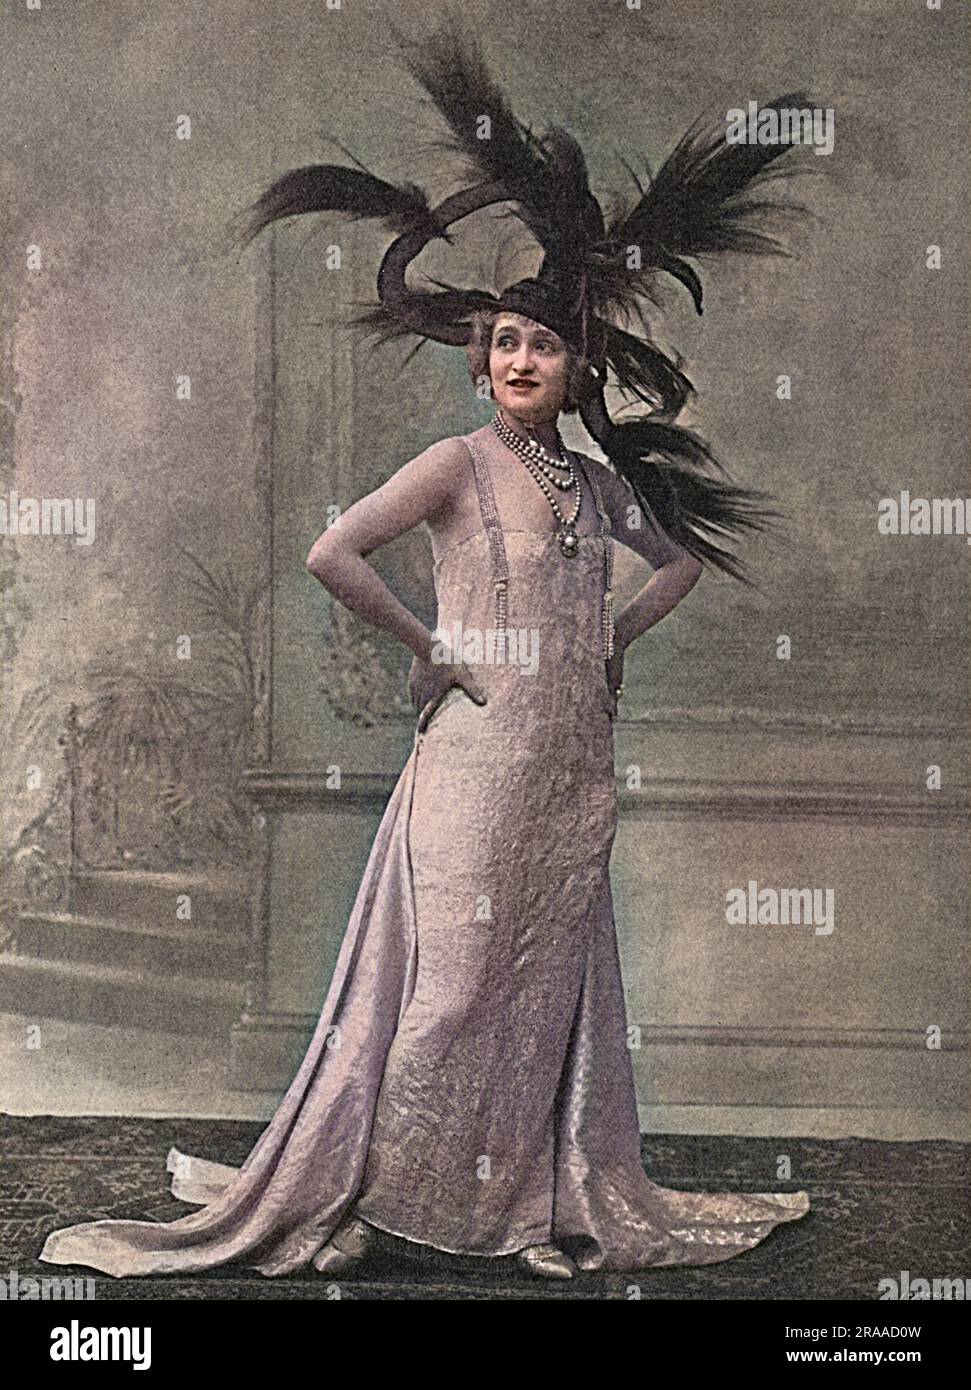 Gaby Deslys (1884 - 1920), französische Schauspielerin, Musiksändlerin und irgendwann Geliebte von König Manuel II. Von Portugal, im Jahr 1915, als sie in '5064 Gerrard' auftrat. Bekannt für ihre prächtigen Bühnenkostüme trägt sie einen besonders extravaganten Kopfschmuck. Datum: 1915 Stockfoto